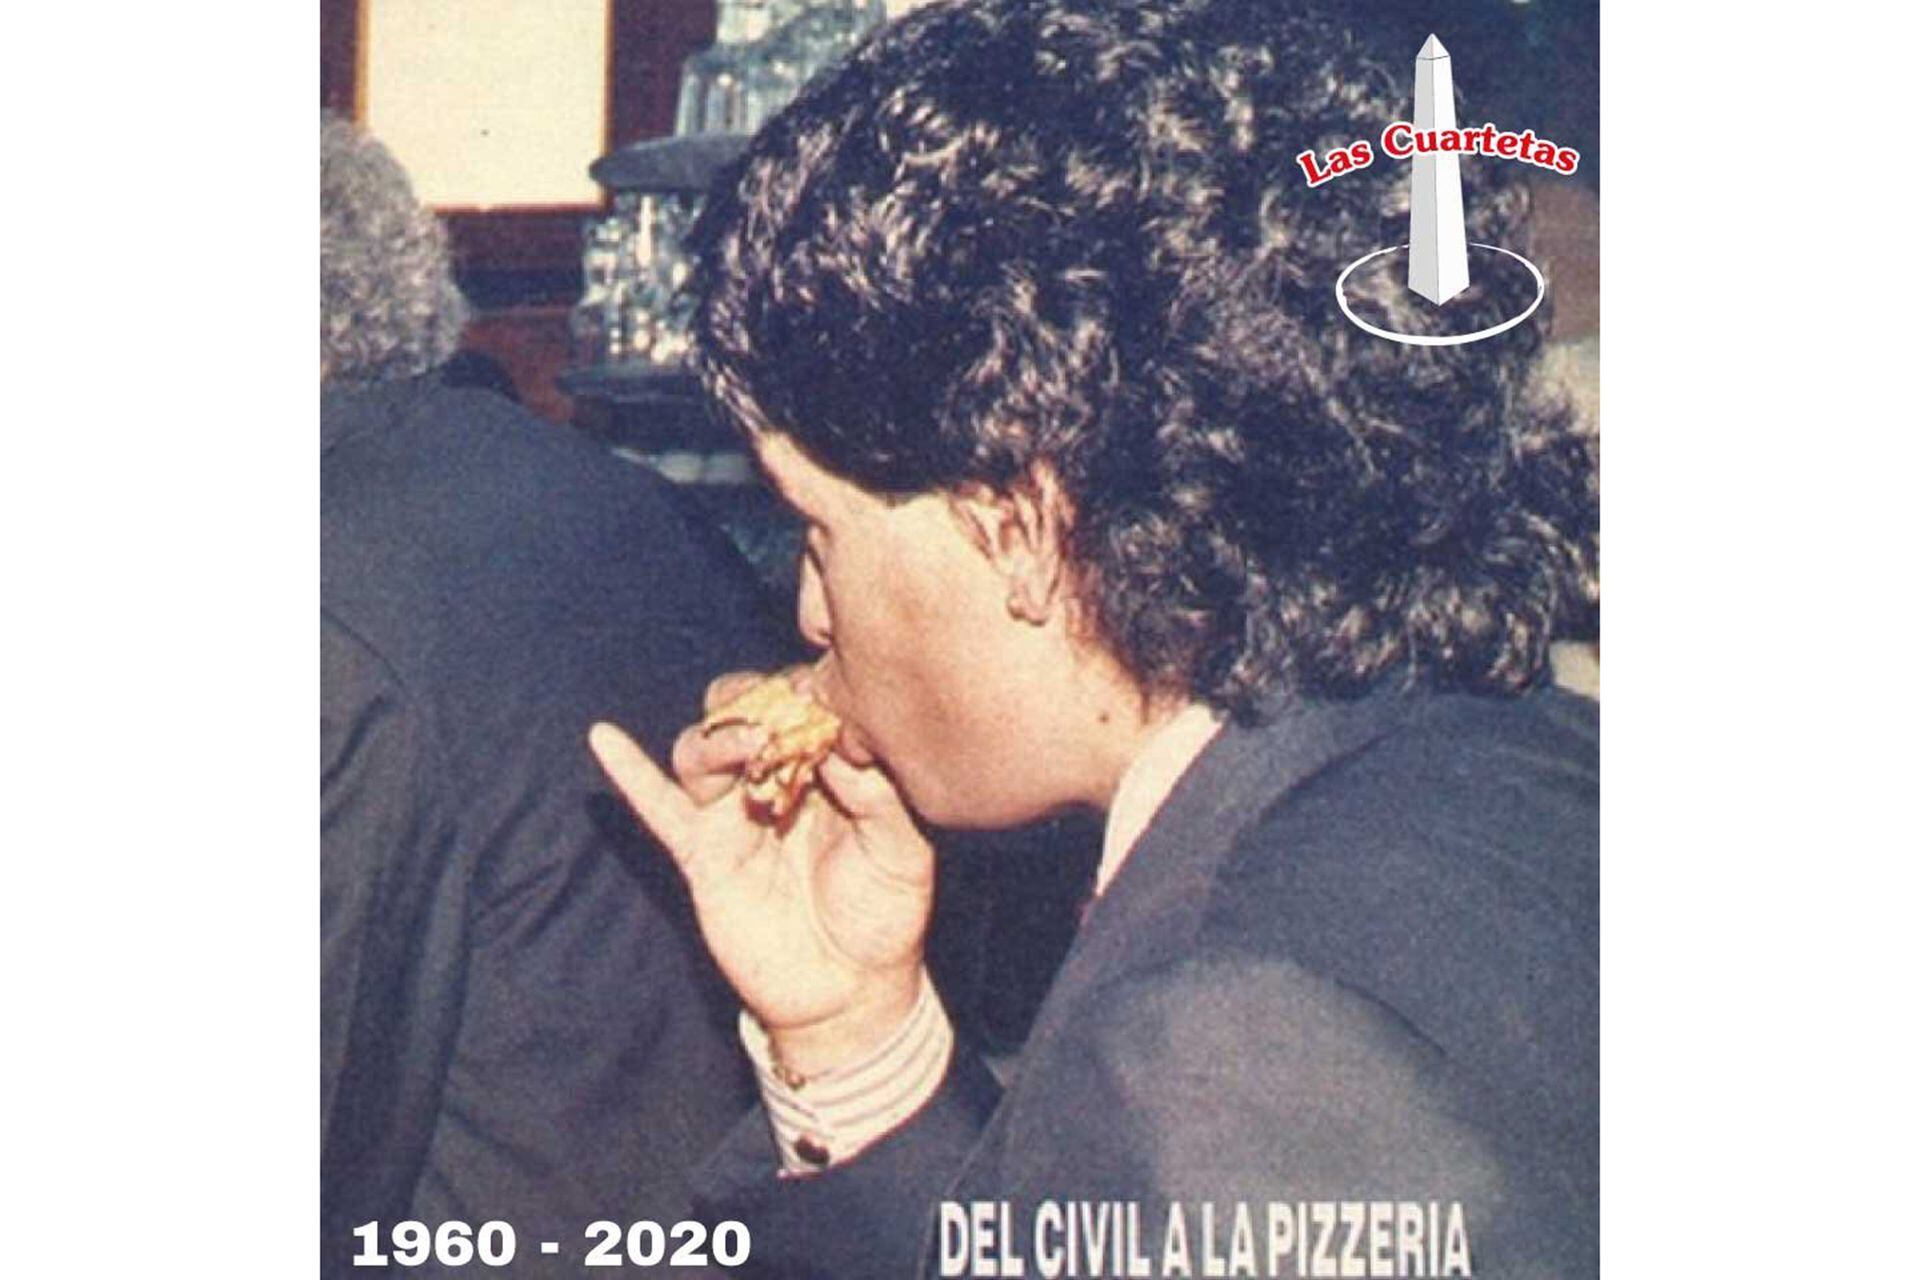 Diego Maradona comió una muza de parado en Las Cuartetas, luego del civil con Claudia Villafañe, antes de ir a la gran fiesta en el Luna Park